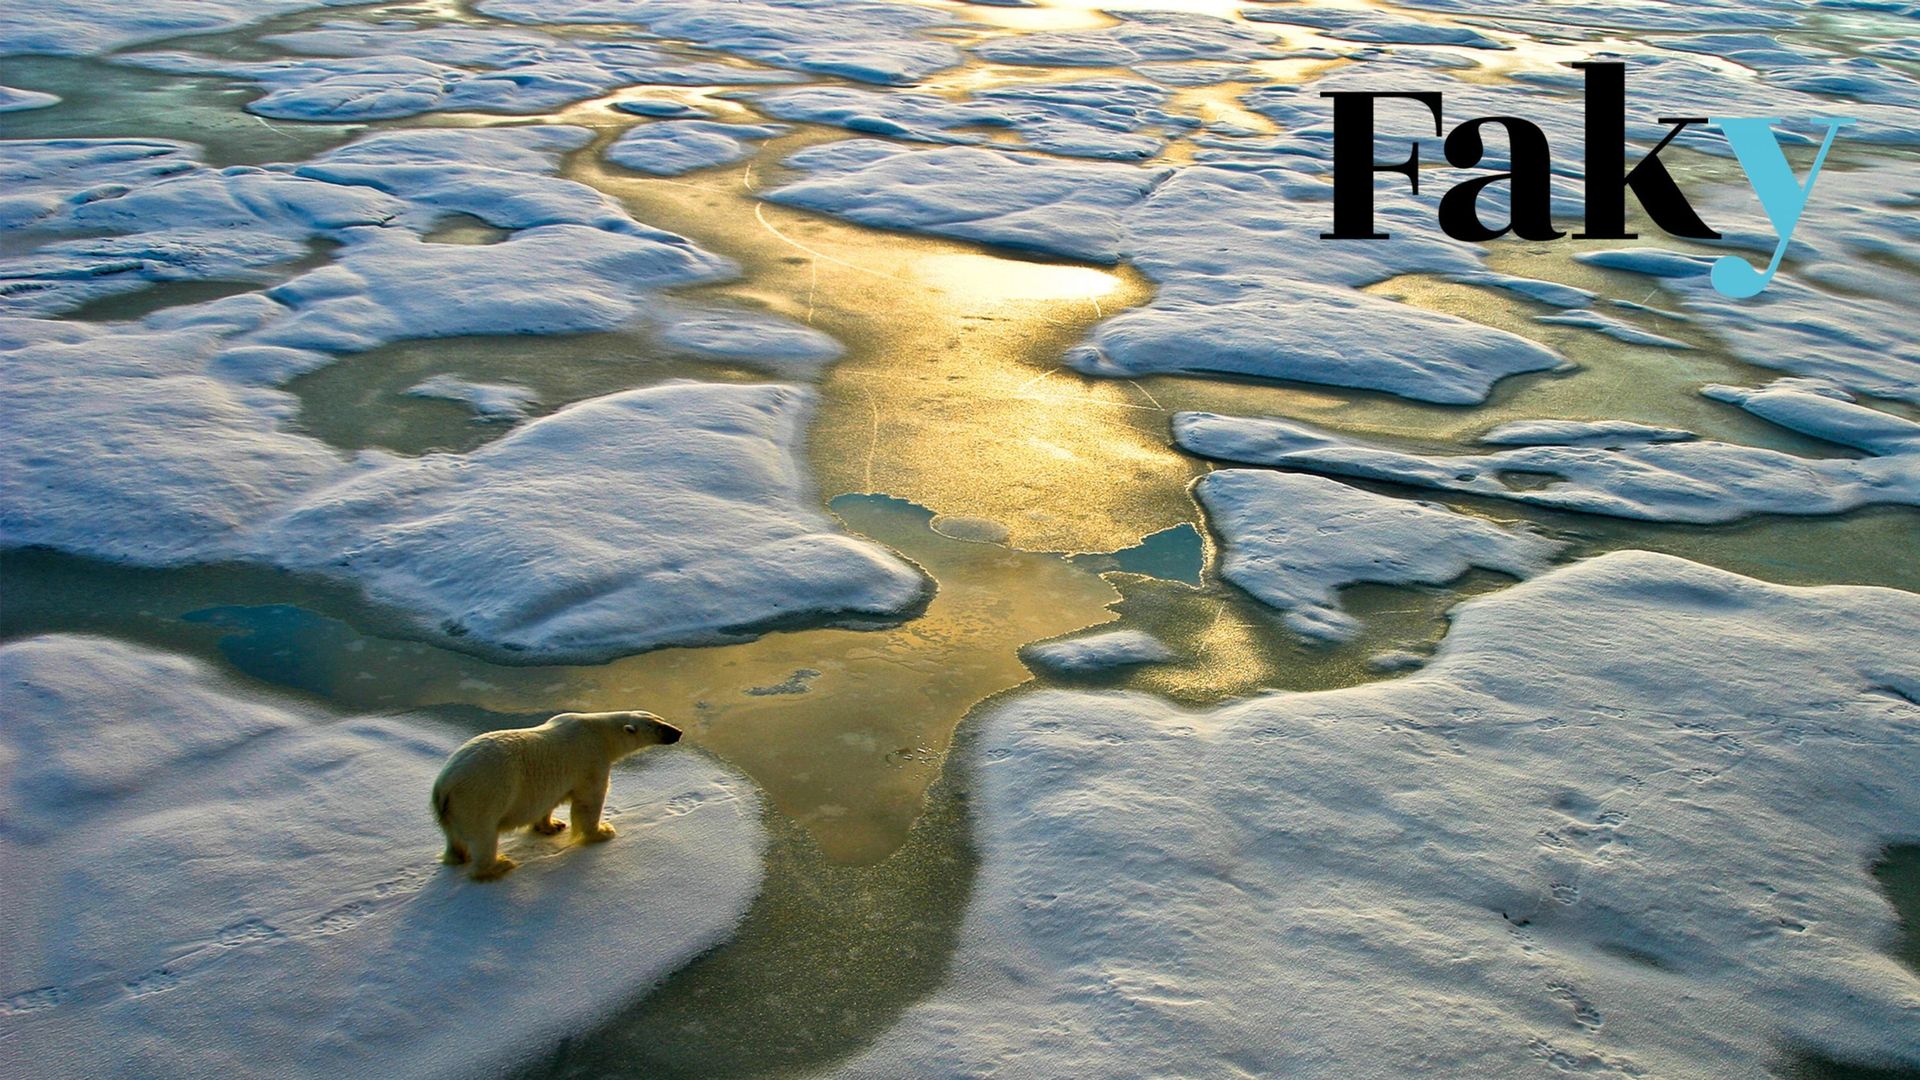 Image d’illustration. Ours polaire sur une large surface de glace dans l’Arctique russe, près de la Terre "Franz Josef".
